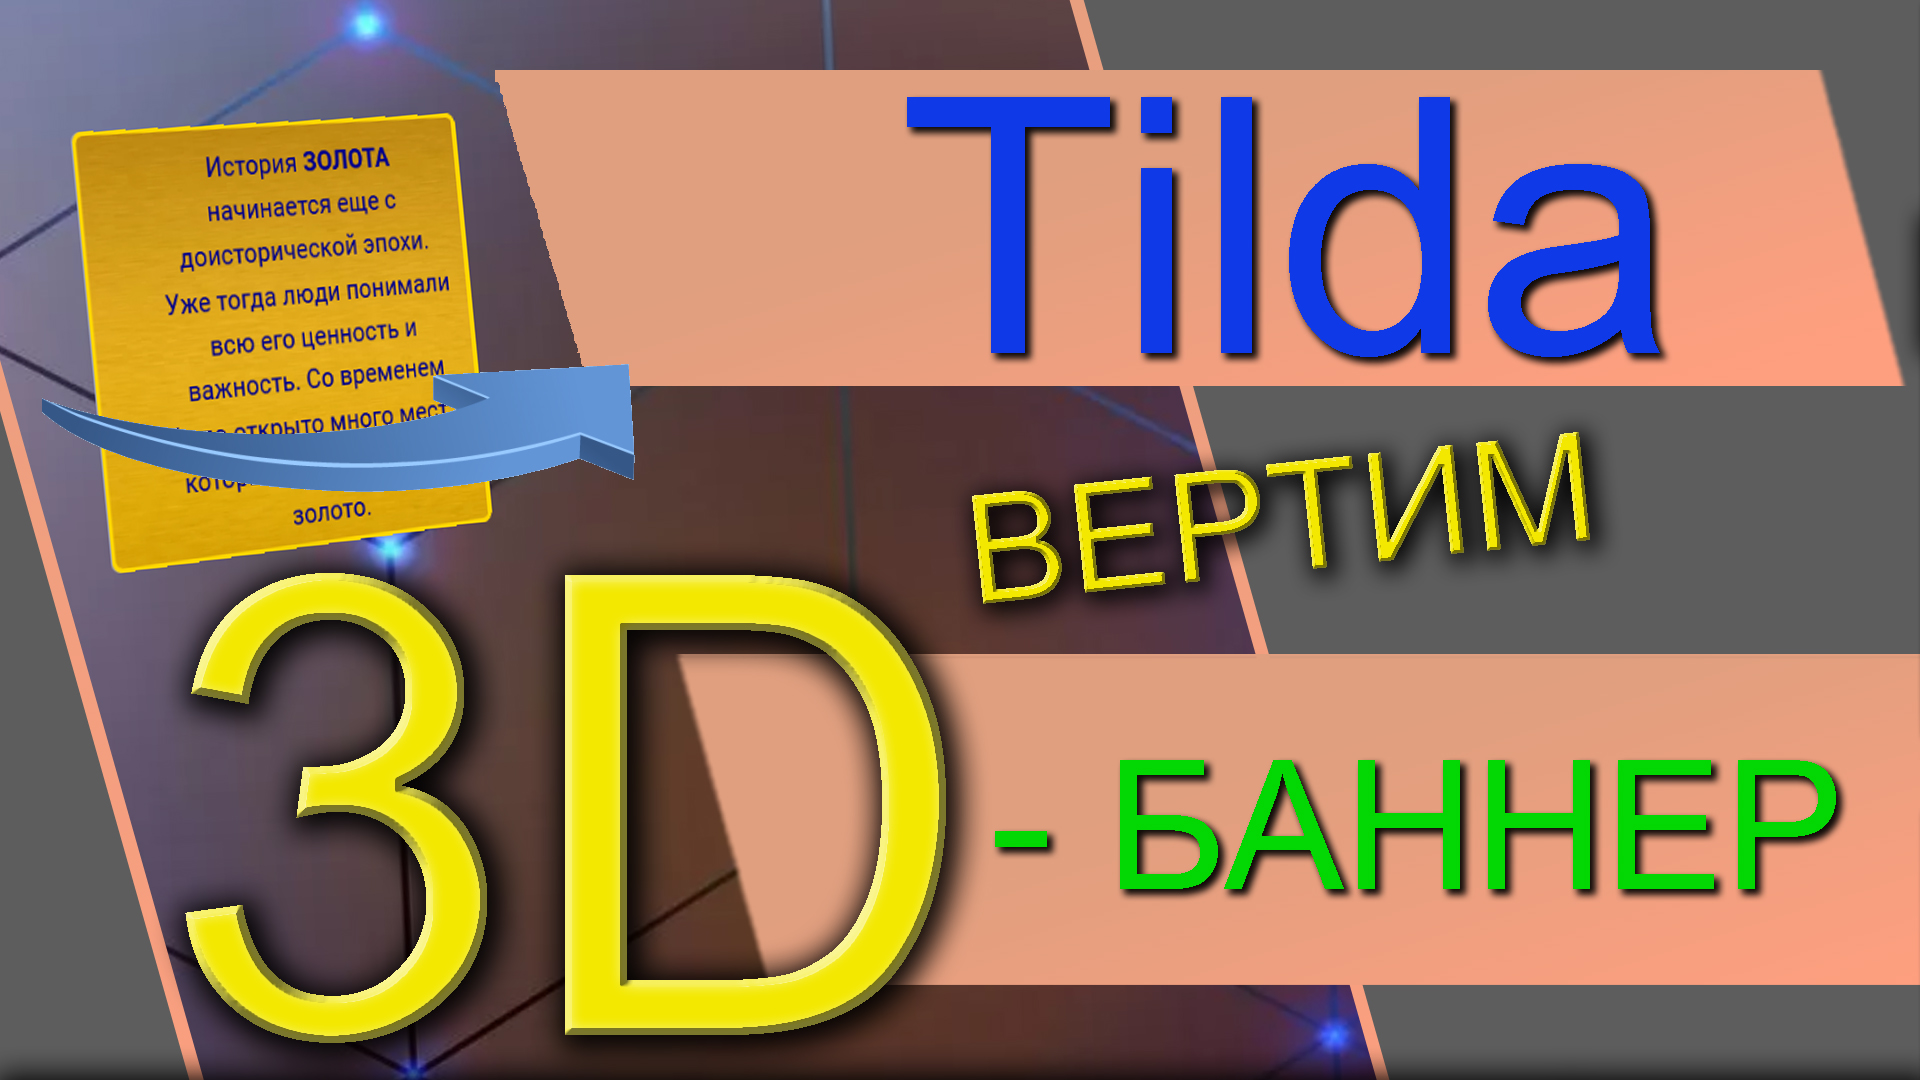 3D-Баннер в конструкторе Tilda на ZERO-Блоках. Эффект объёмных объектов в трёхмерном пространстве.